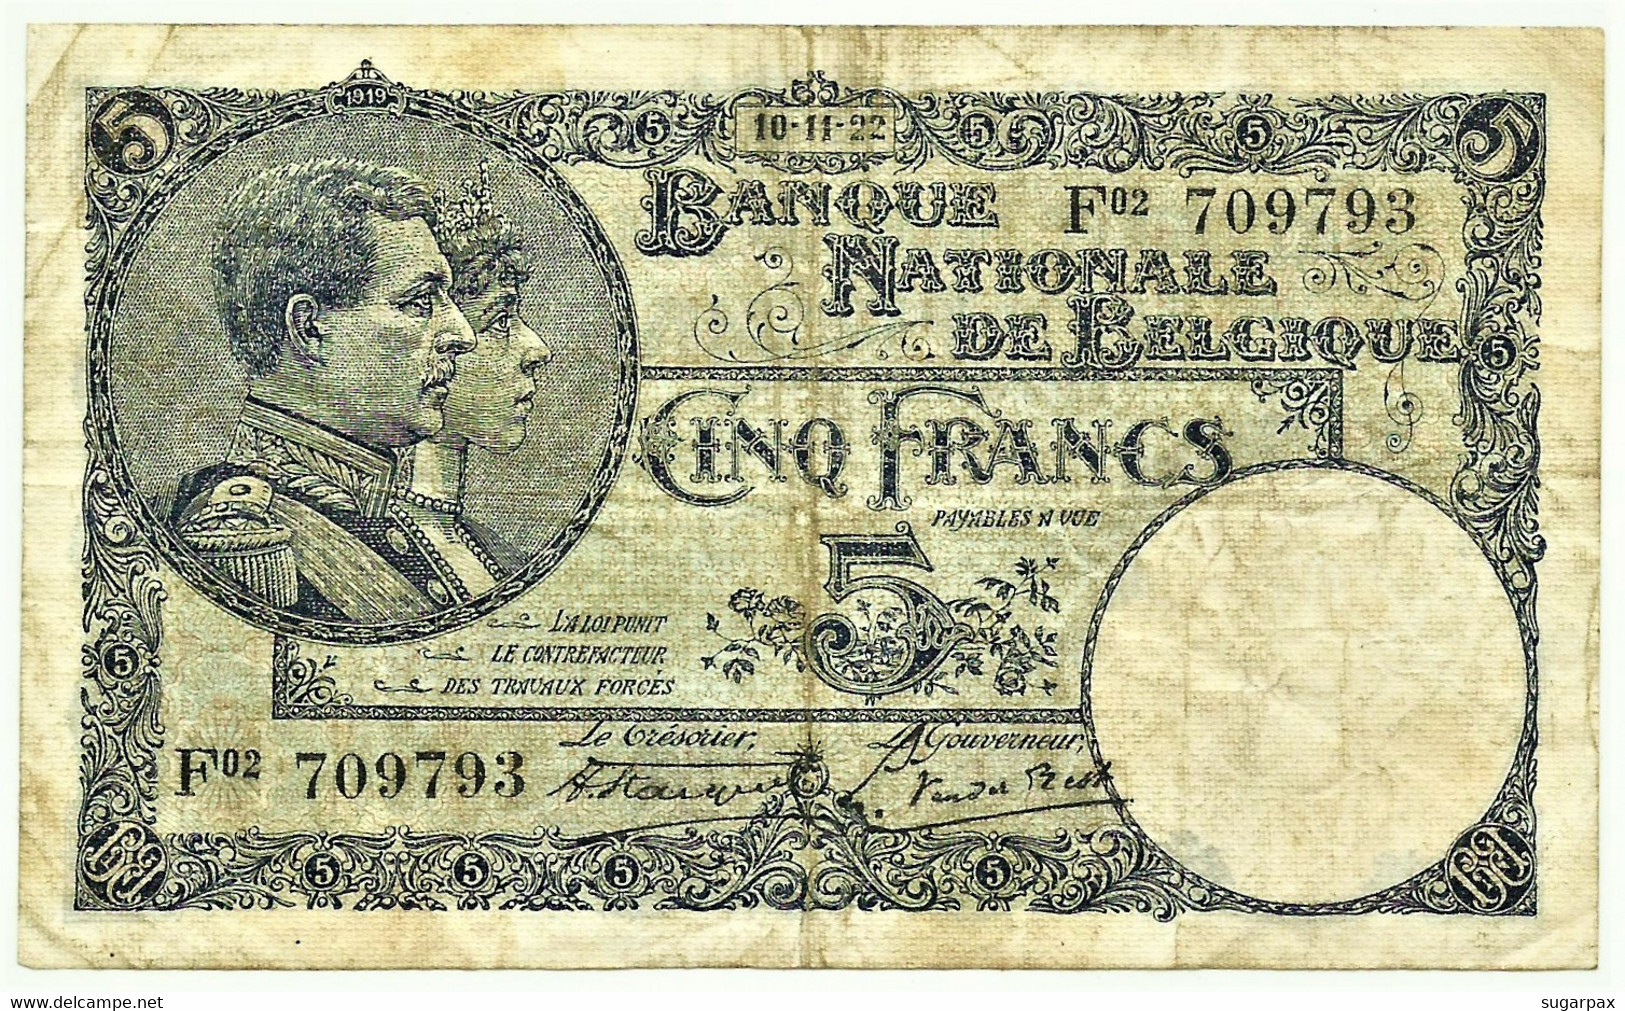 Belgium - 5 Francs - 10.11.1922 - Pick 93 - Serie F 02 - King Albert & Queen Elizabeth - Belgie Belgique - 5 Francs